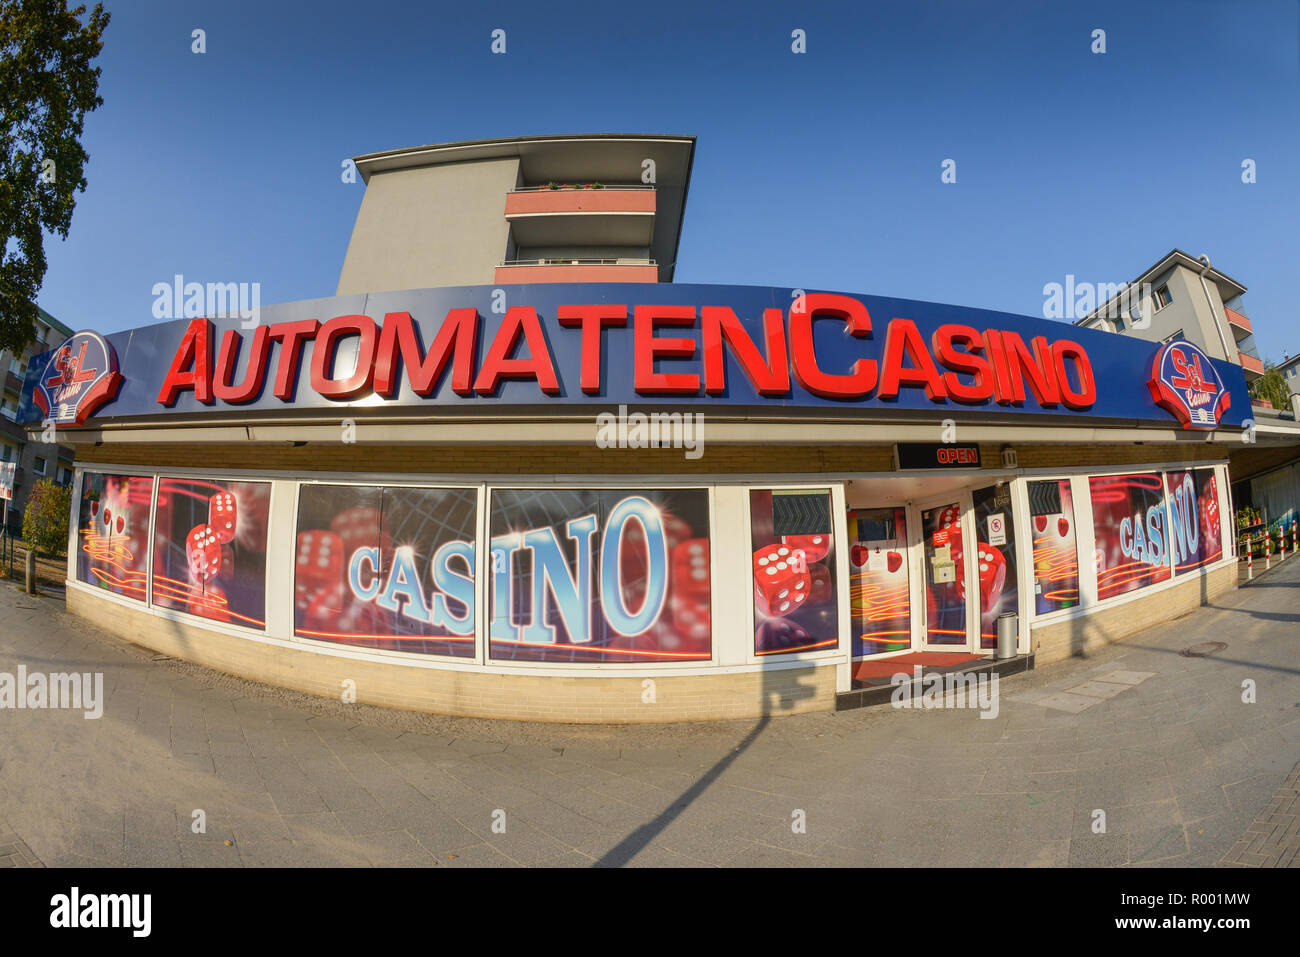 Machine casino, Müllerstrasse, Wedding, middle, Berlin, Germany, Automatencasino, Muellerstrasse, Mitte, Deutschland Stock Photo